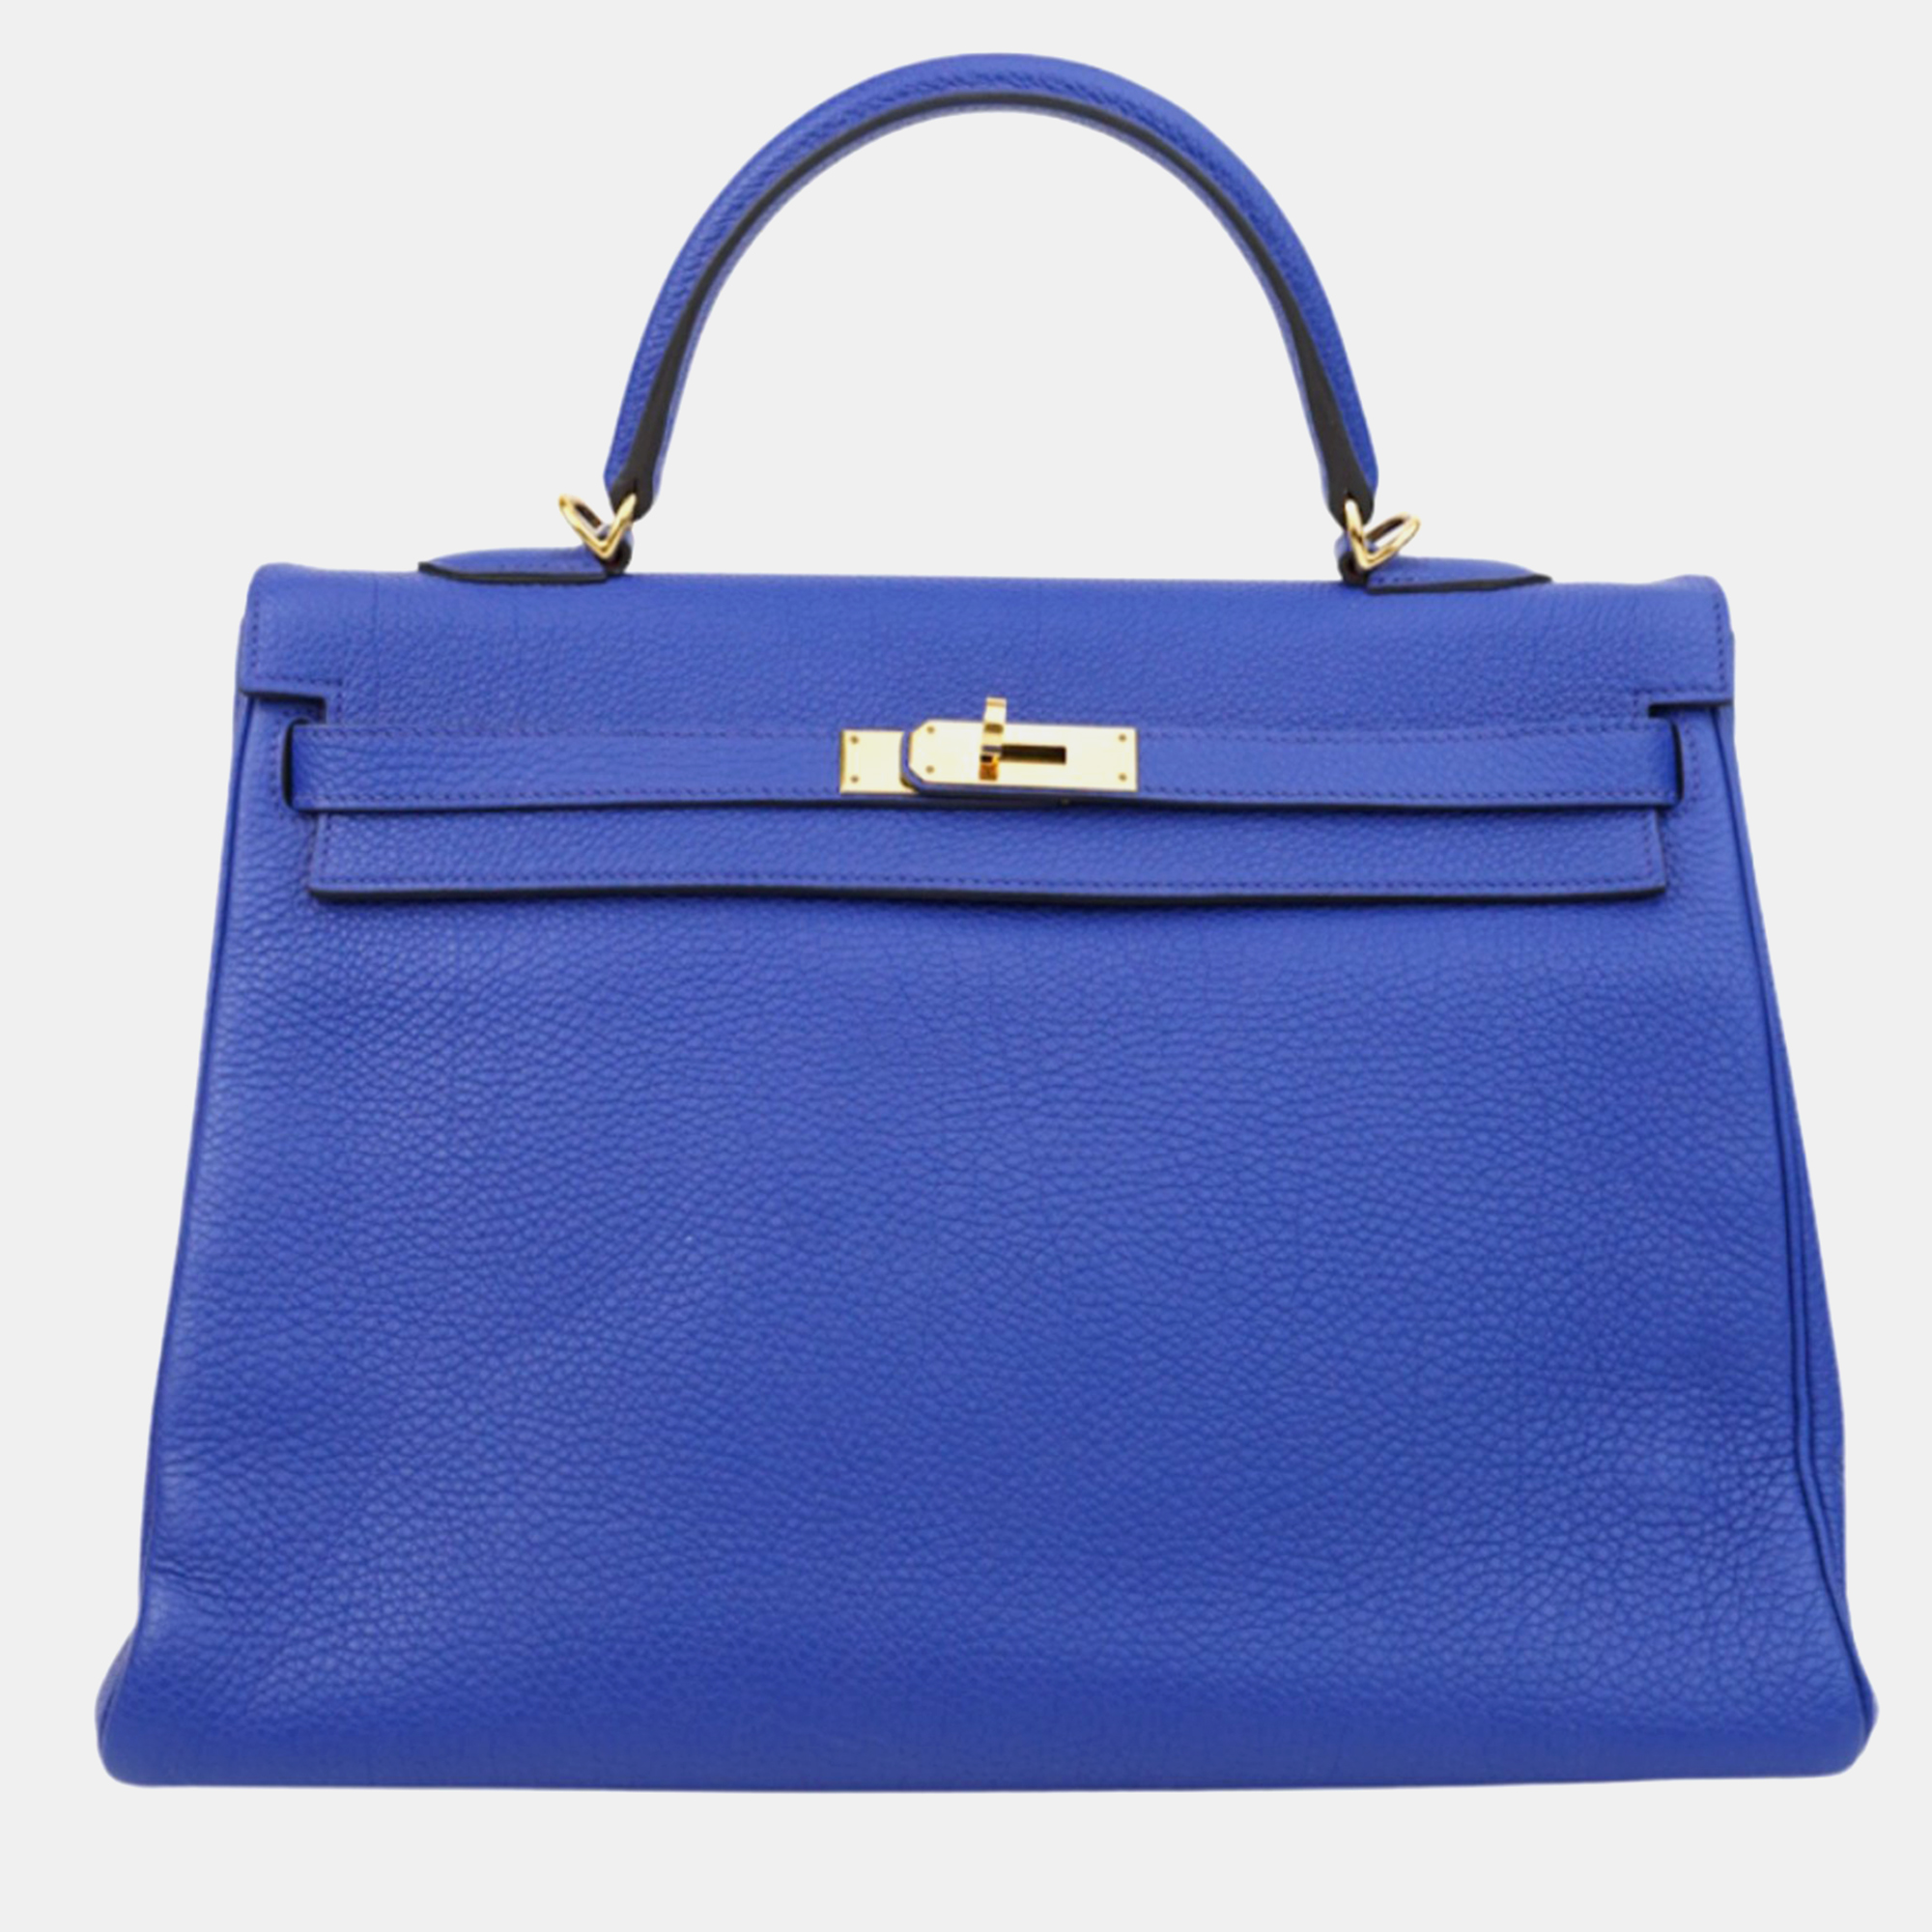 Hermes blue electric togo kelly 35 handbag